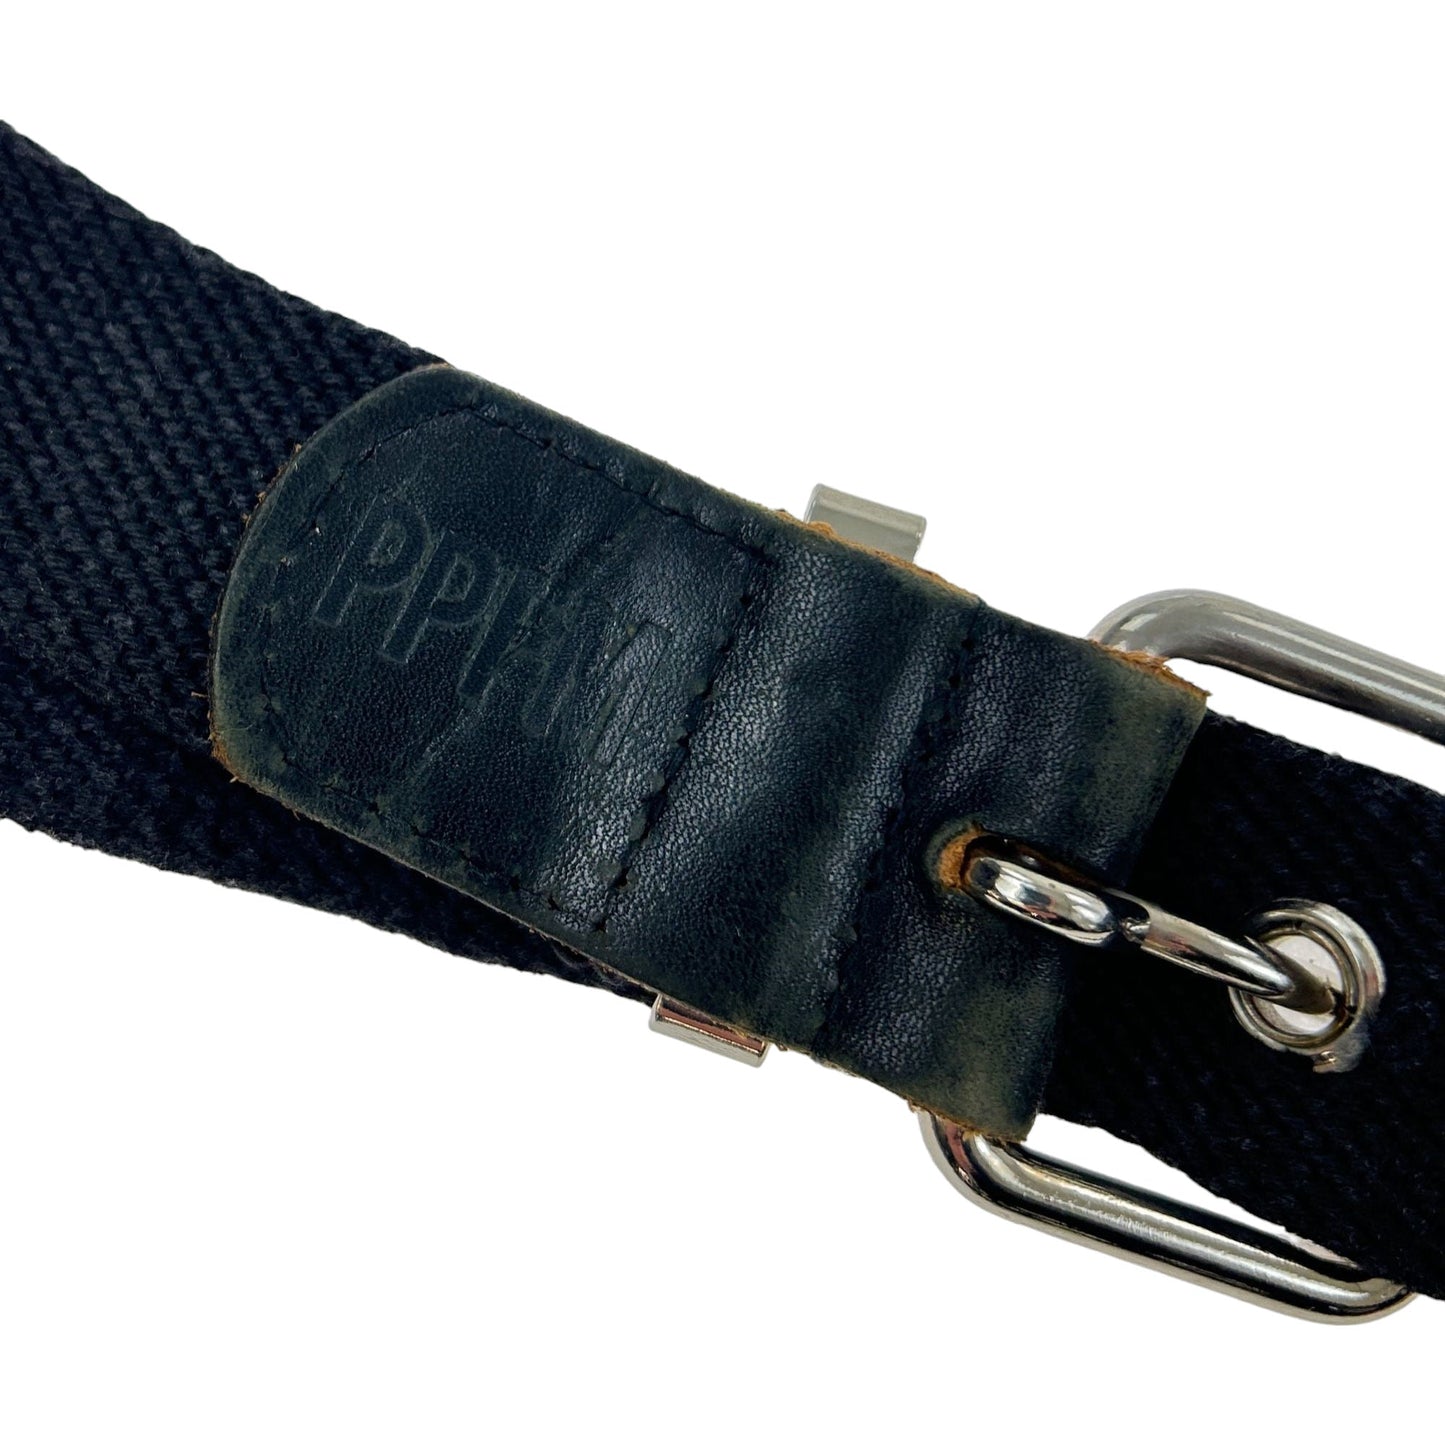 Vintage PPFM Studded Belt Size One Size